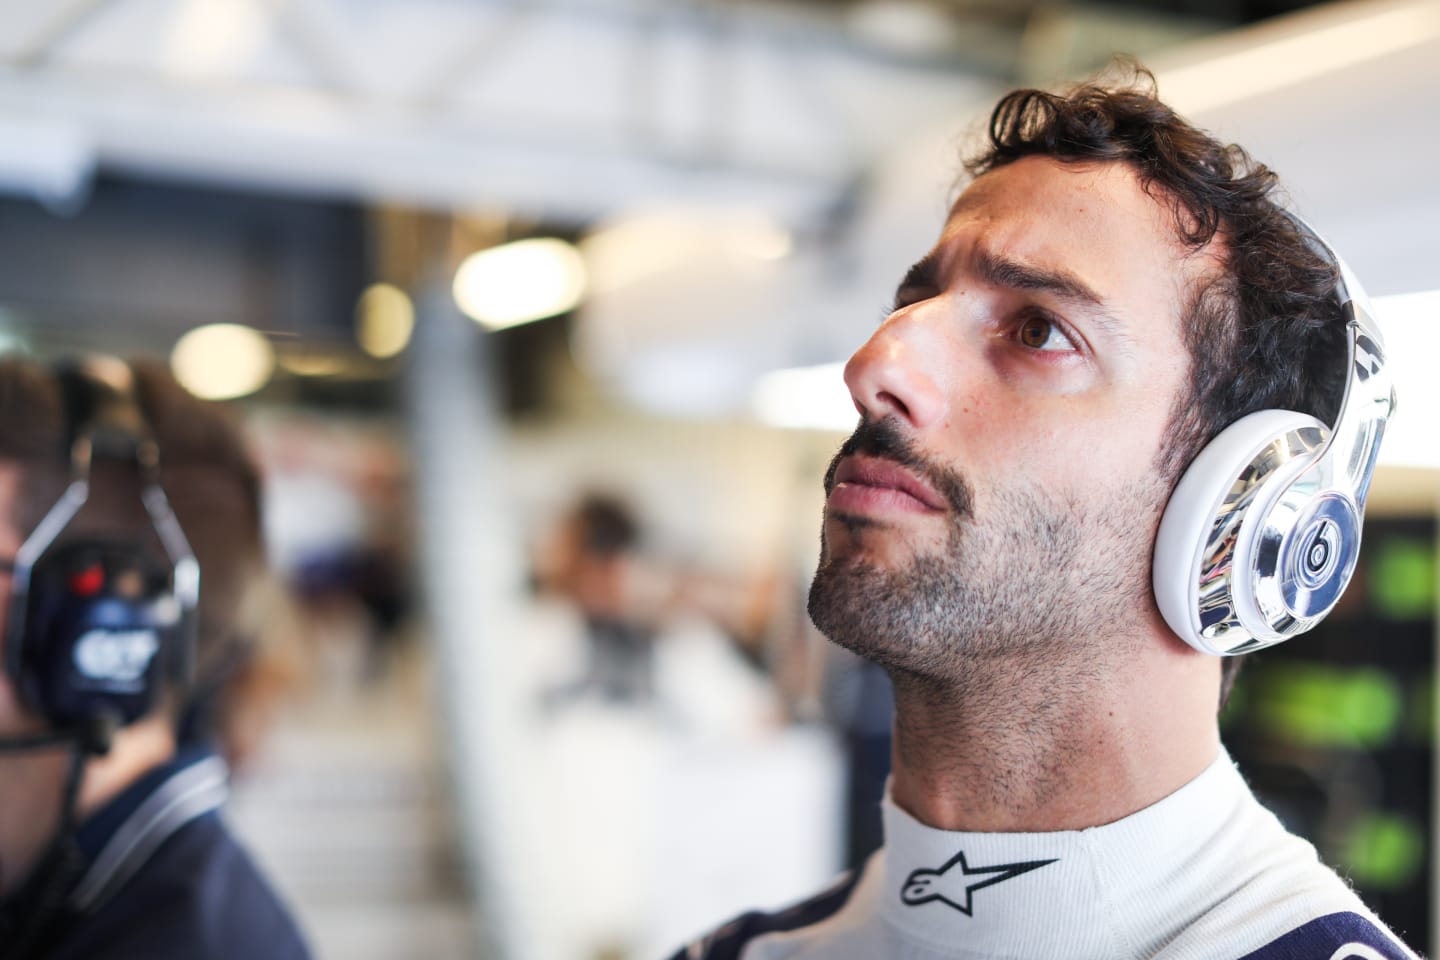 ABU DHABI, UNITED ARAB EMIRATES - NOVEMBER 25: Daniel Ricciardo of Australia and Scuderia